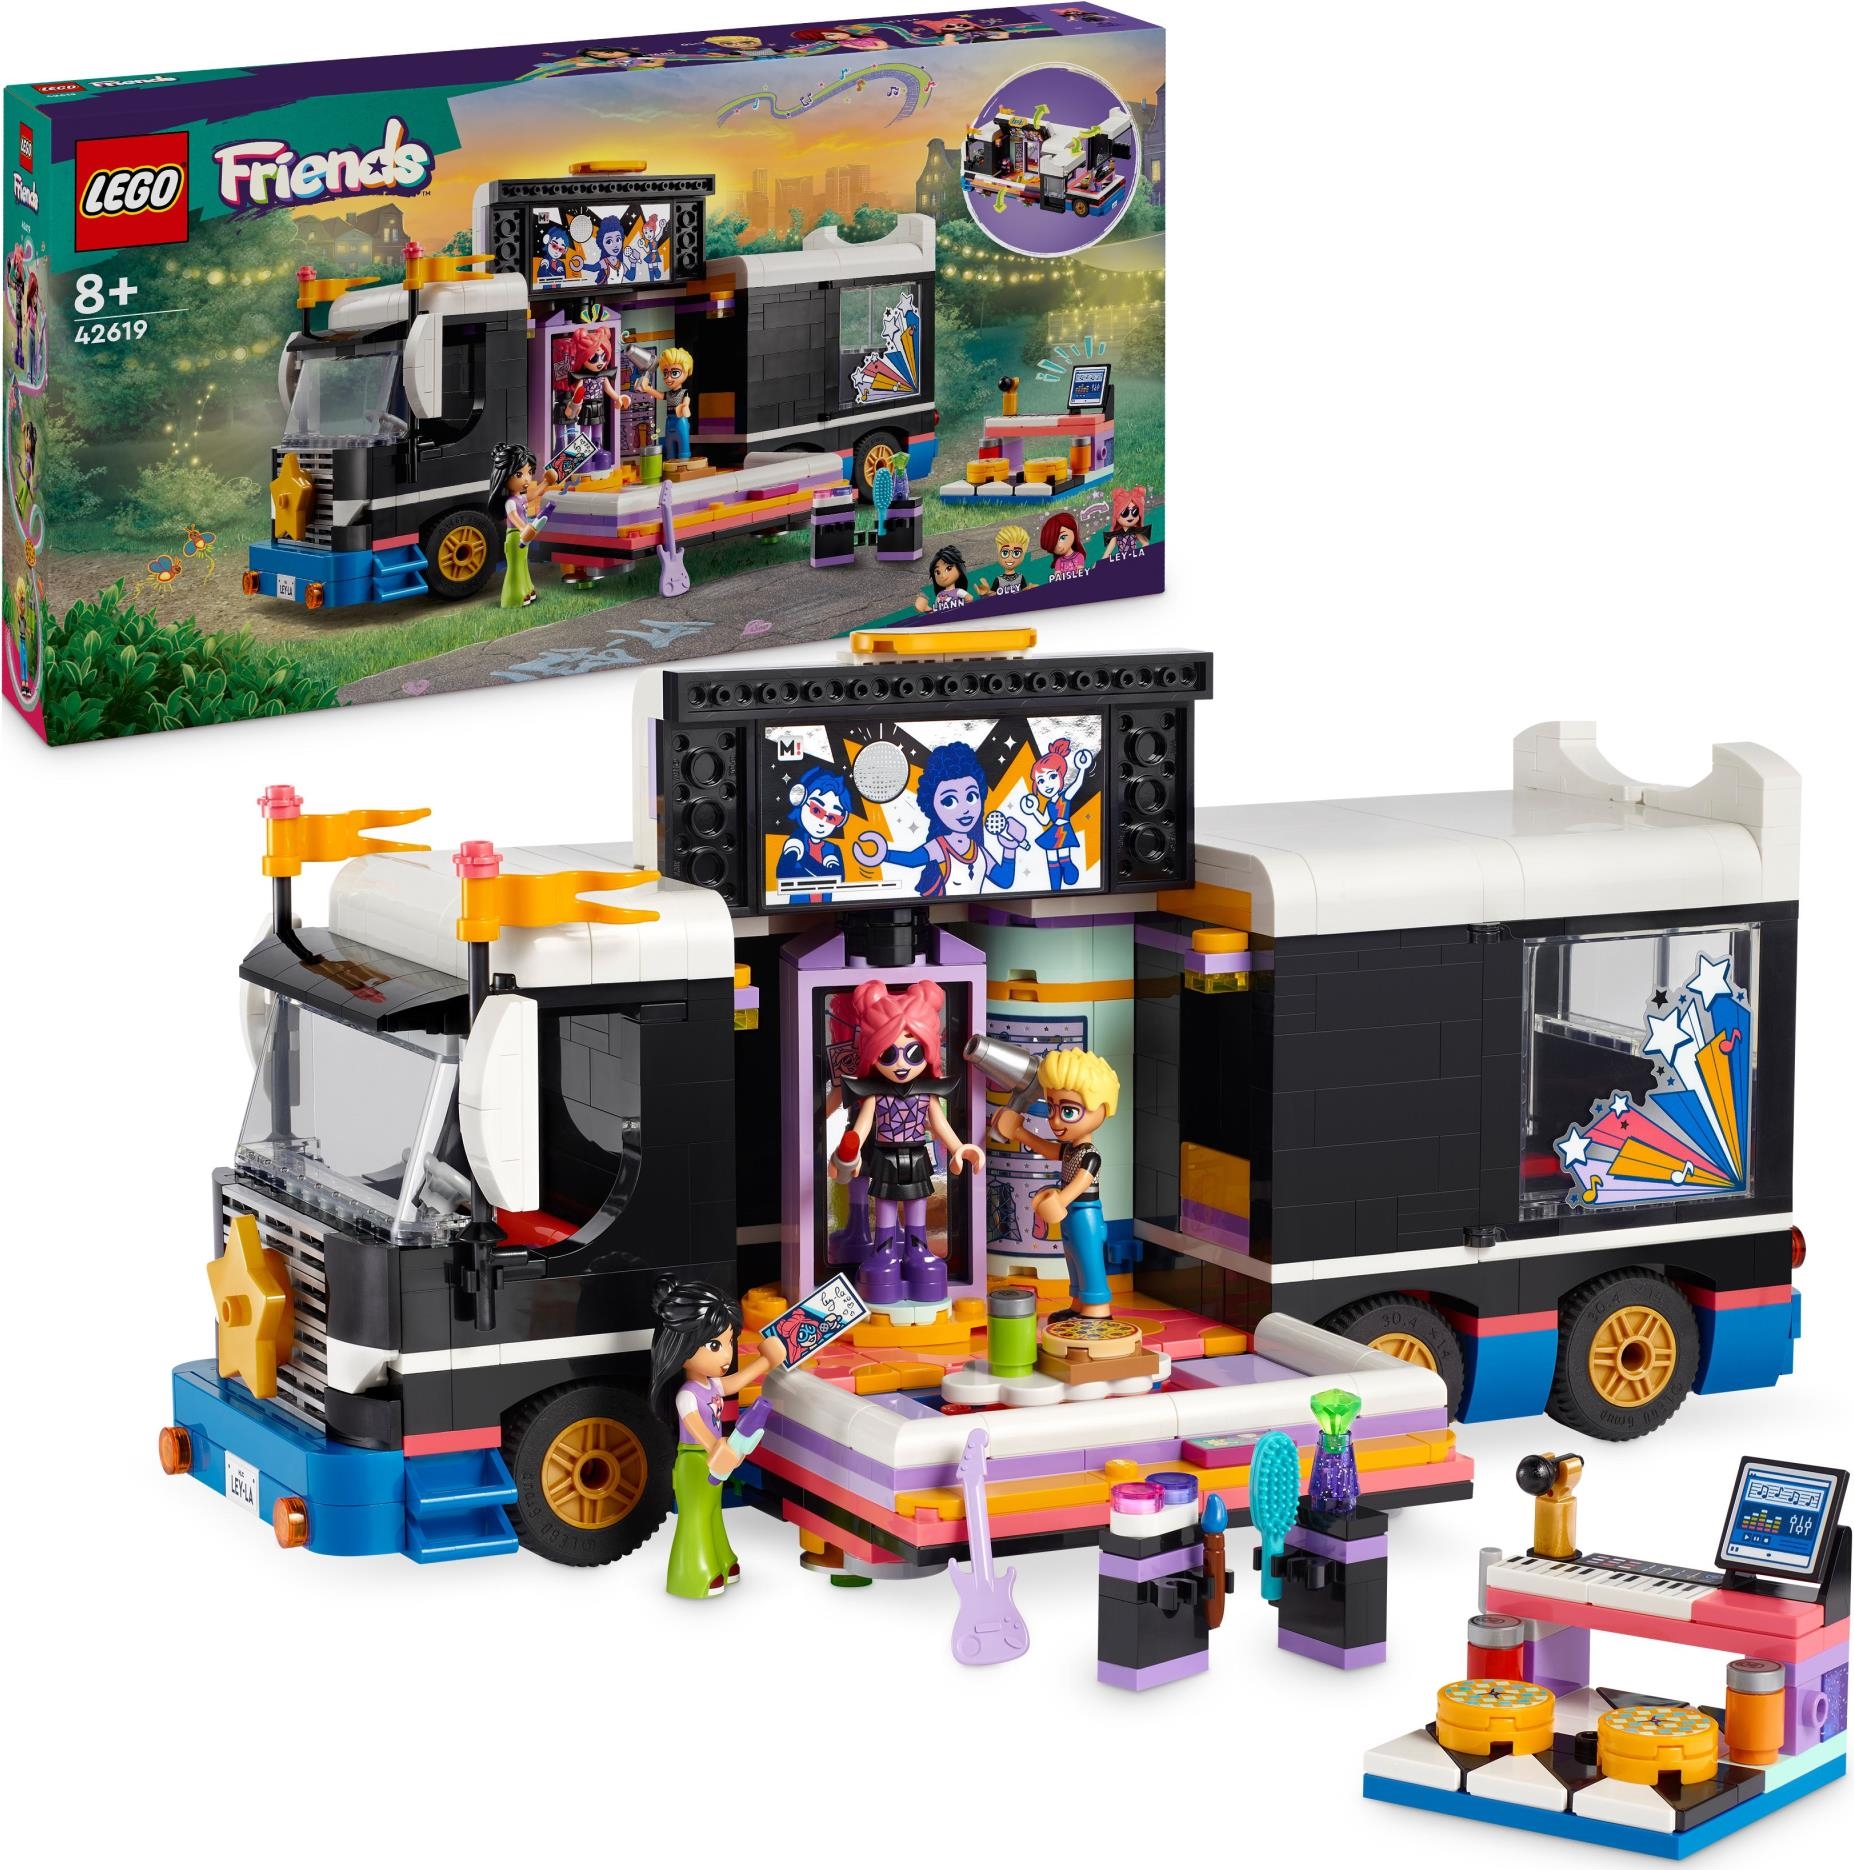 Lego: 42619 - Friends - Tour Bus Delle Pop Star